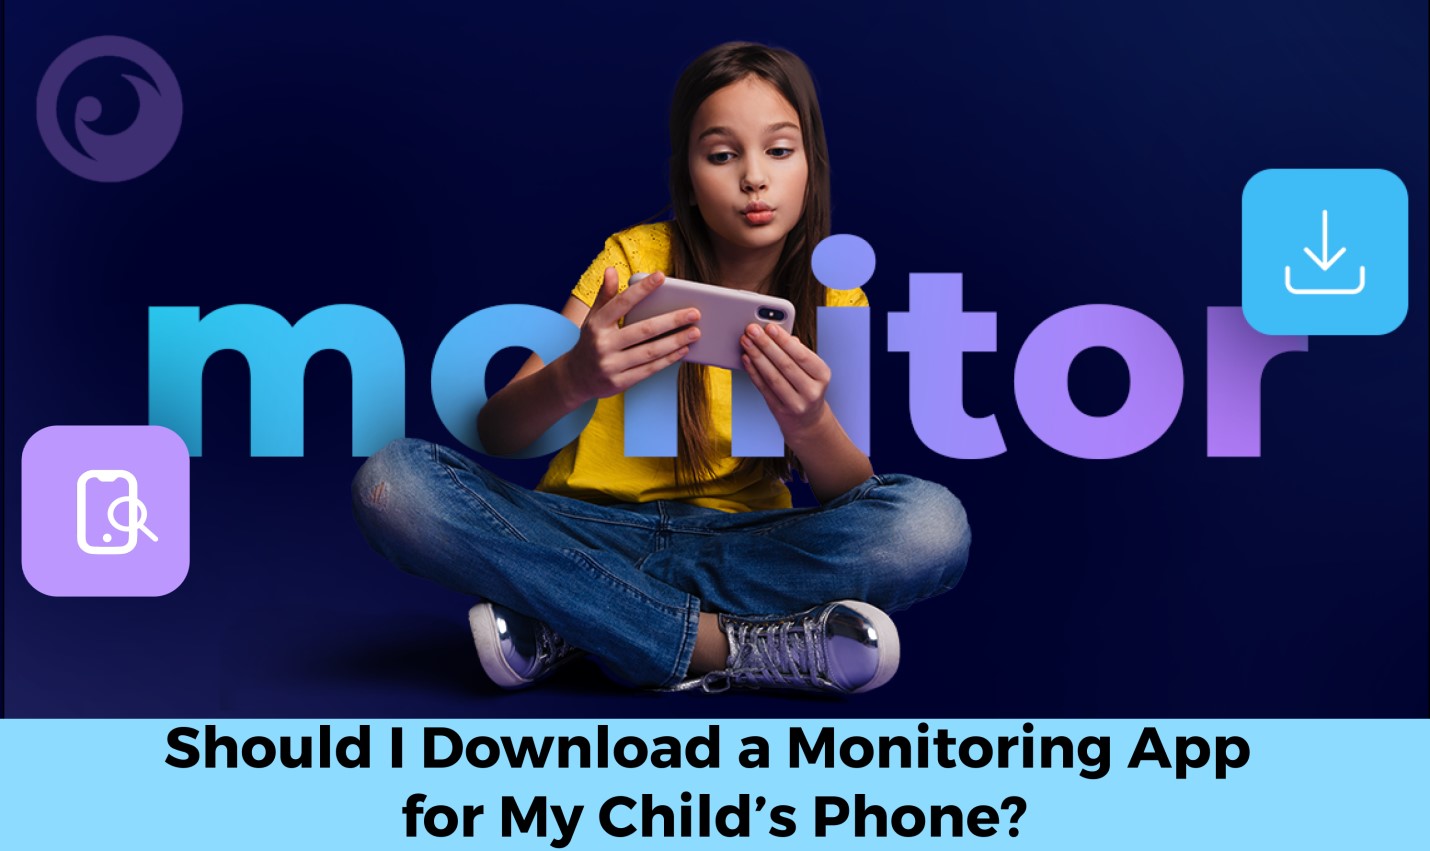 Dovrei scaricare un'app di monitoraggio per il telefono di mio figlio? - immagine news su imei.info